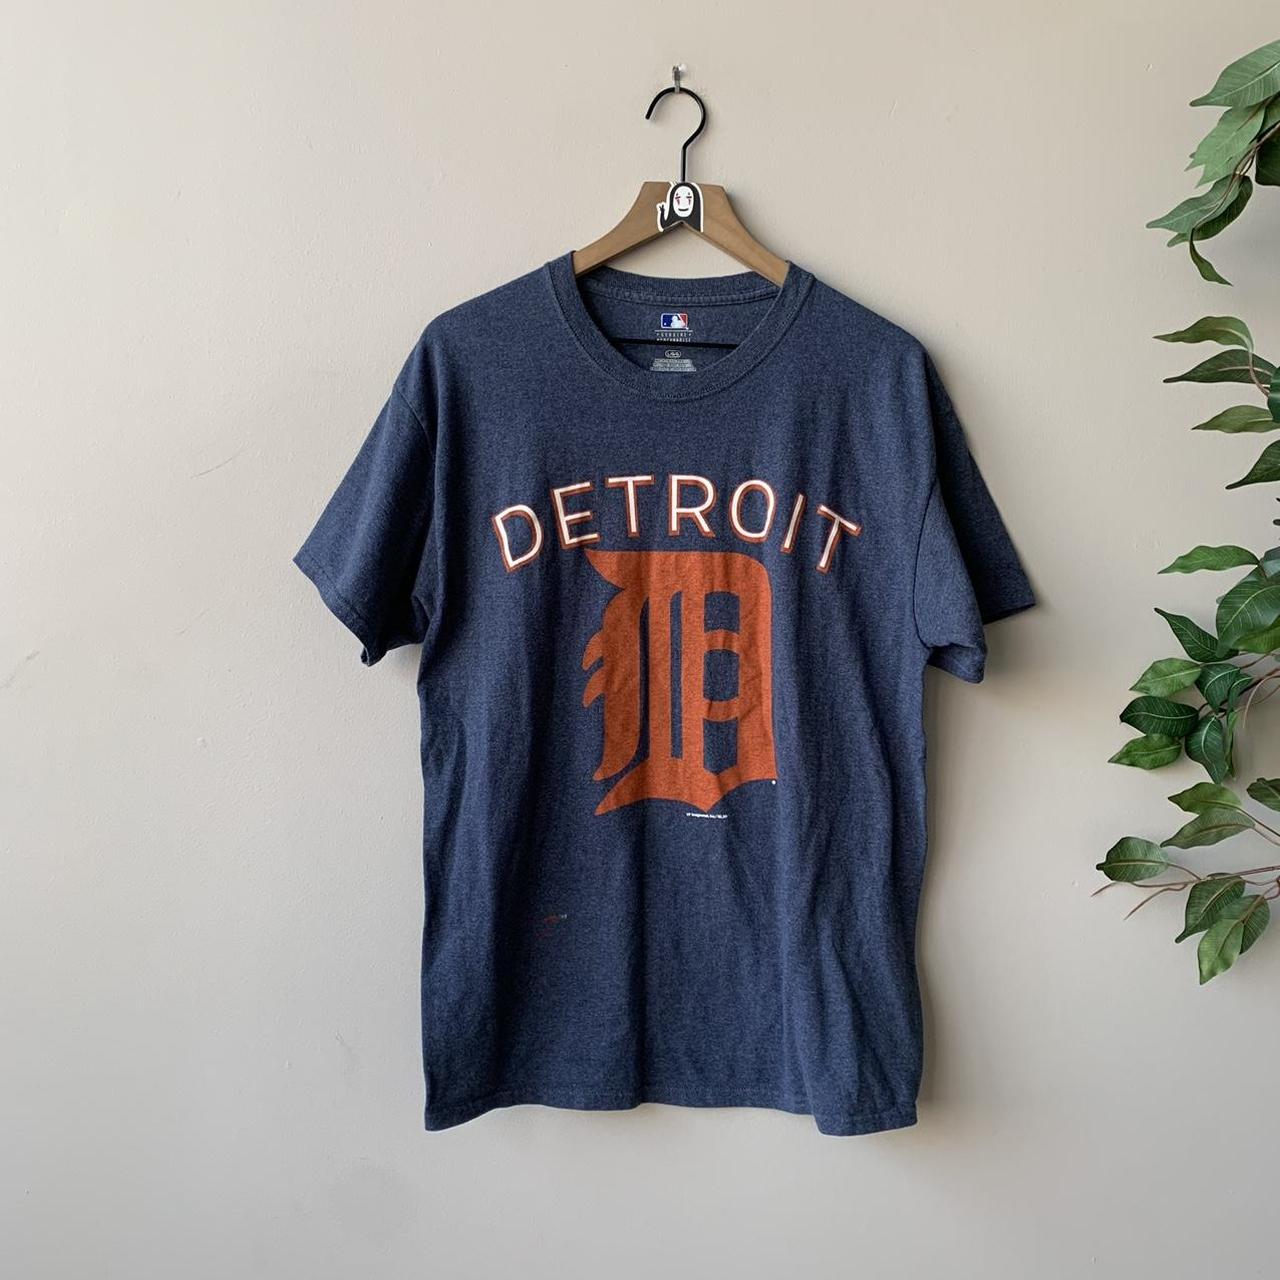 Genuine Merchandise Detroit Tigers Tshirt Blue Orange Baseball MLB